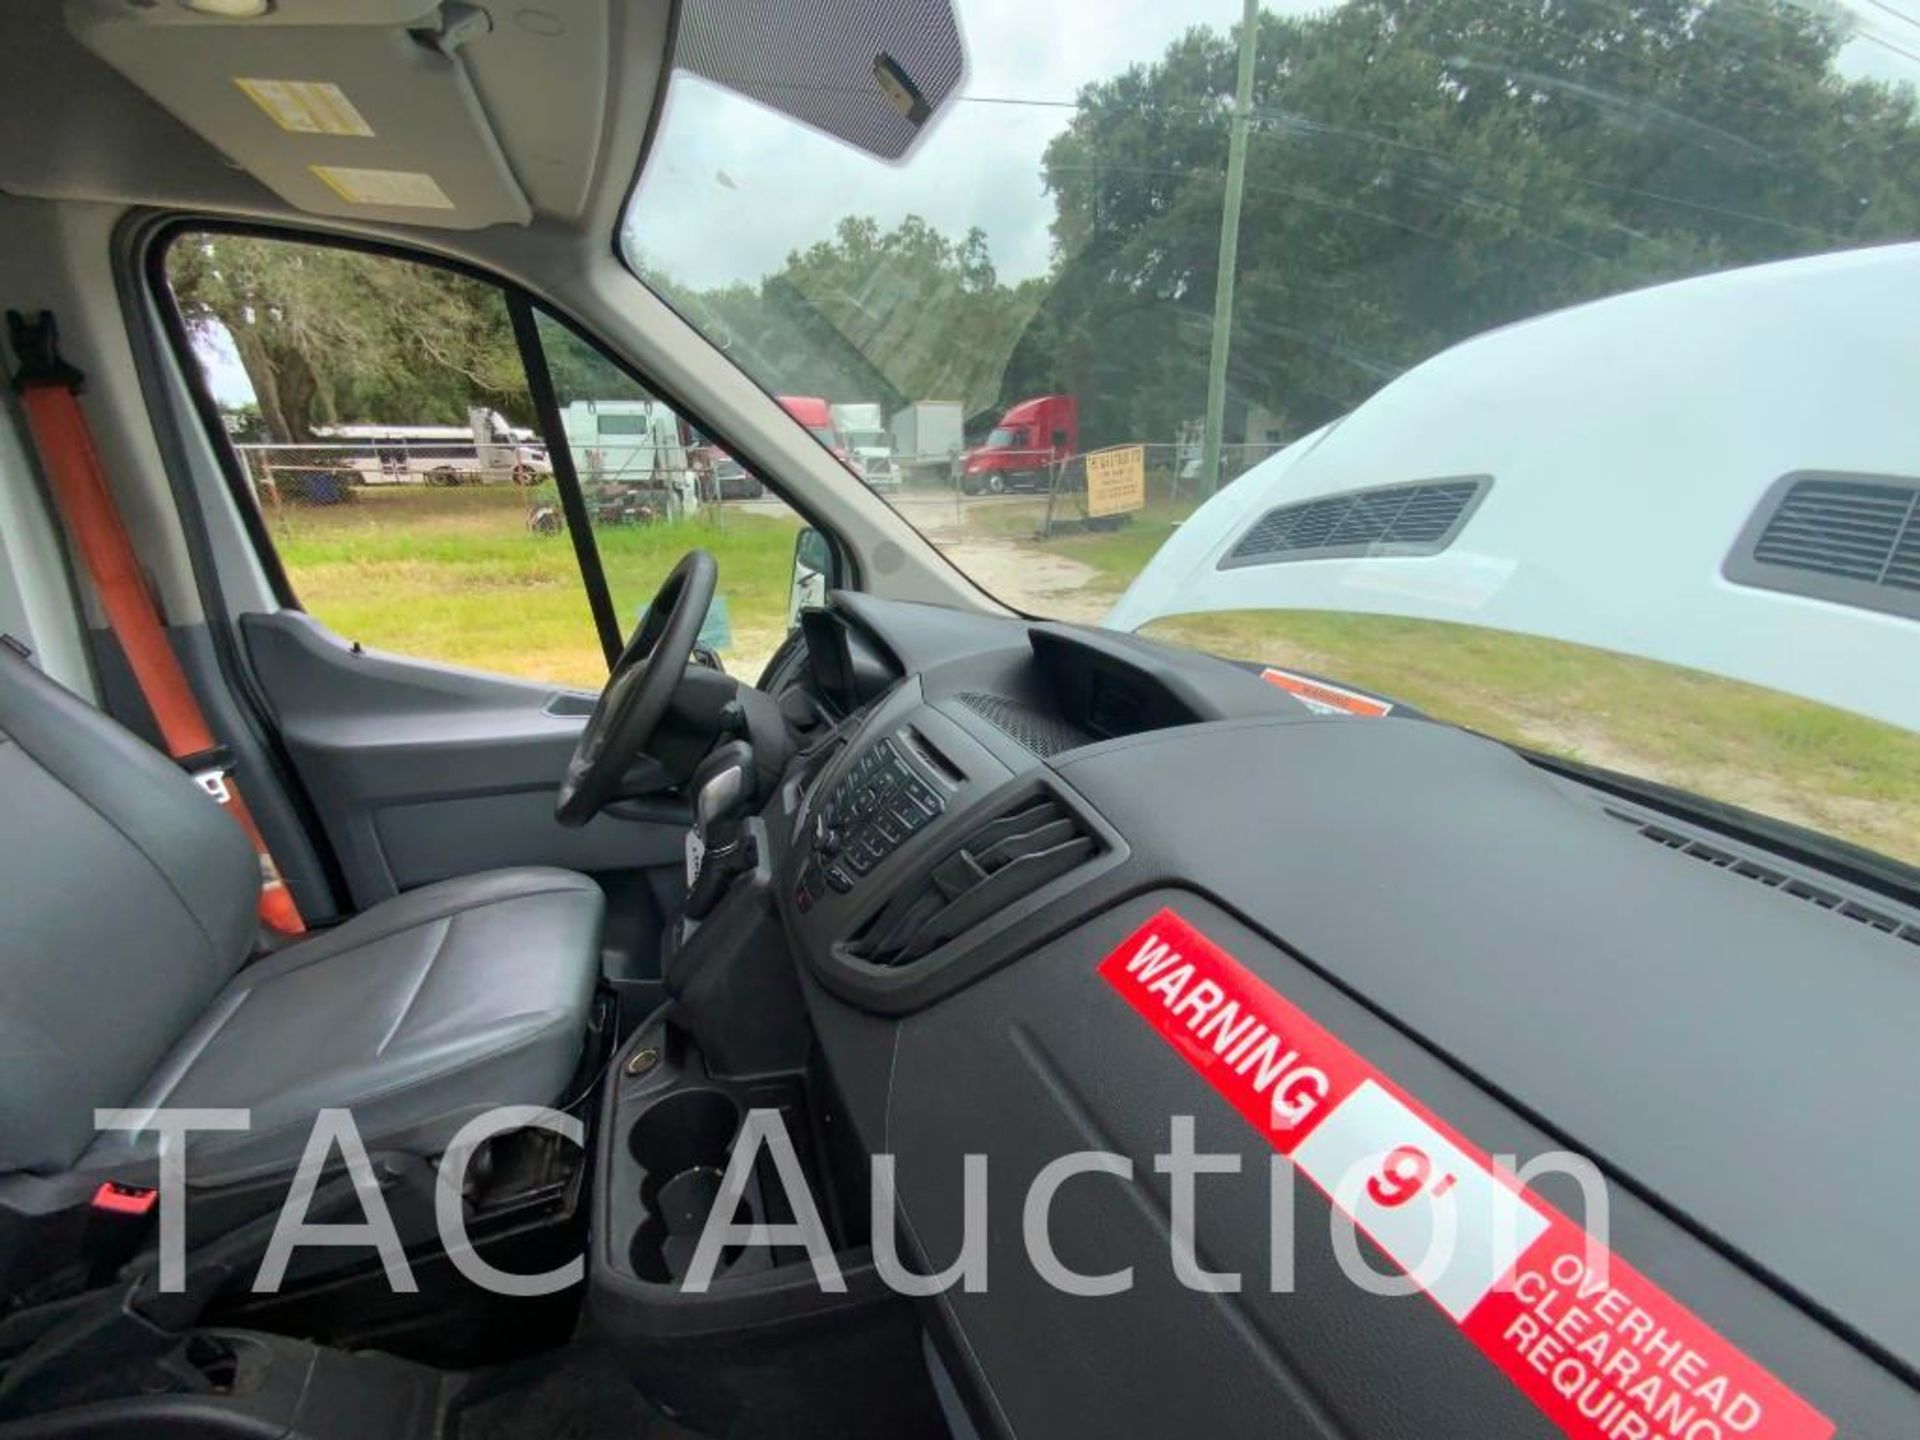 2019 Ford Transit 150 Cargo Van - Image 19 of 54